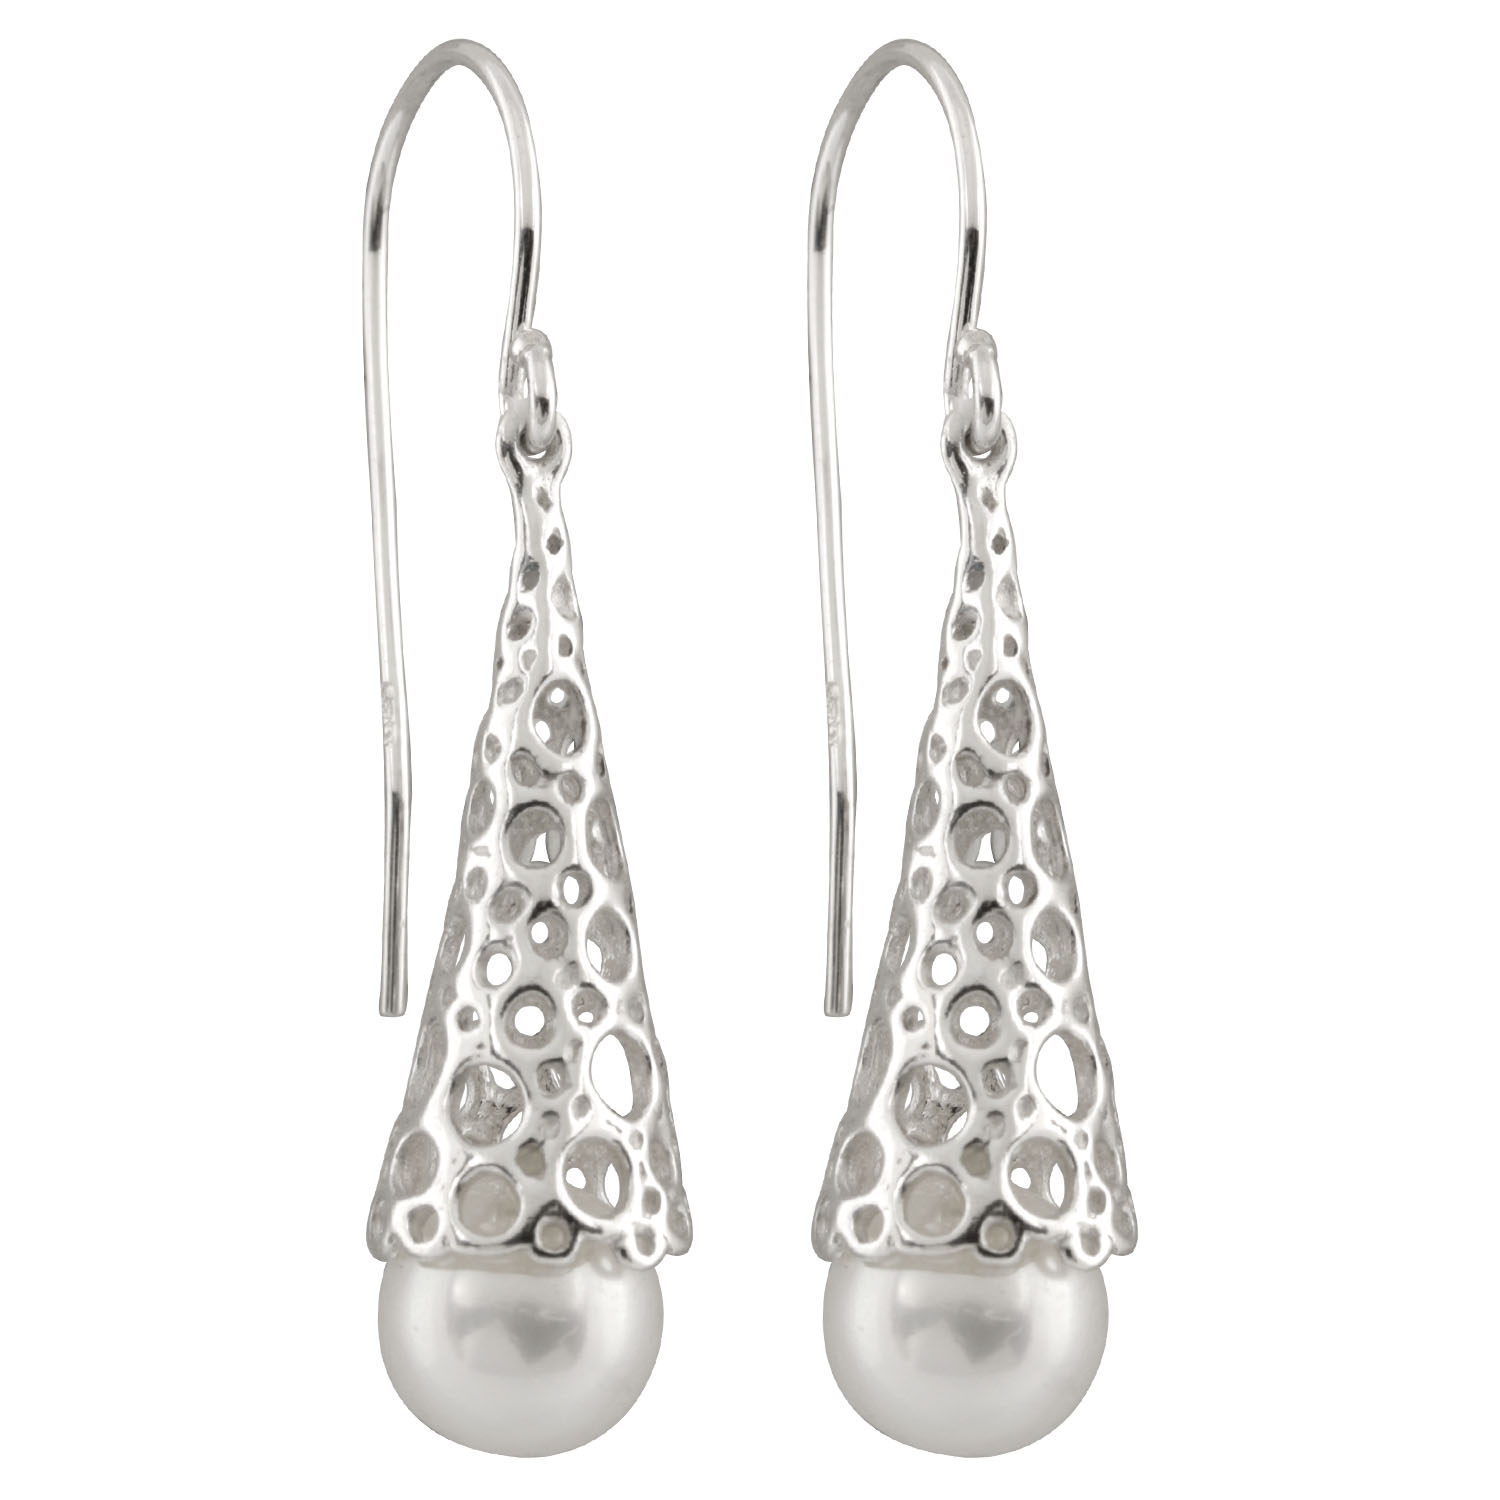 New silver earrings